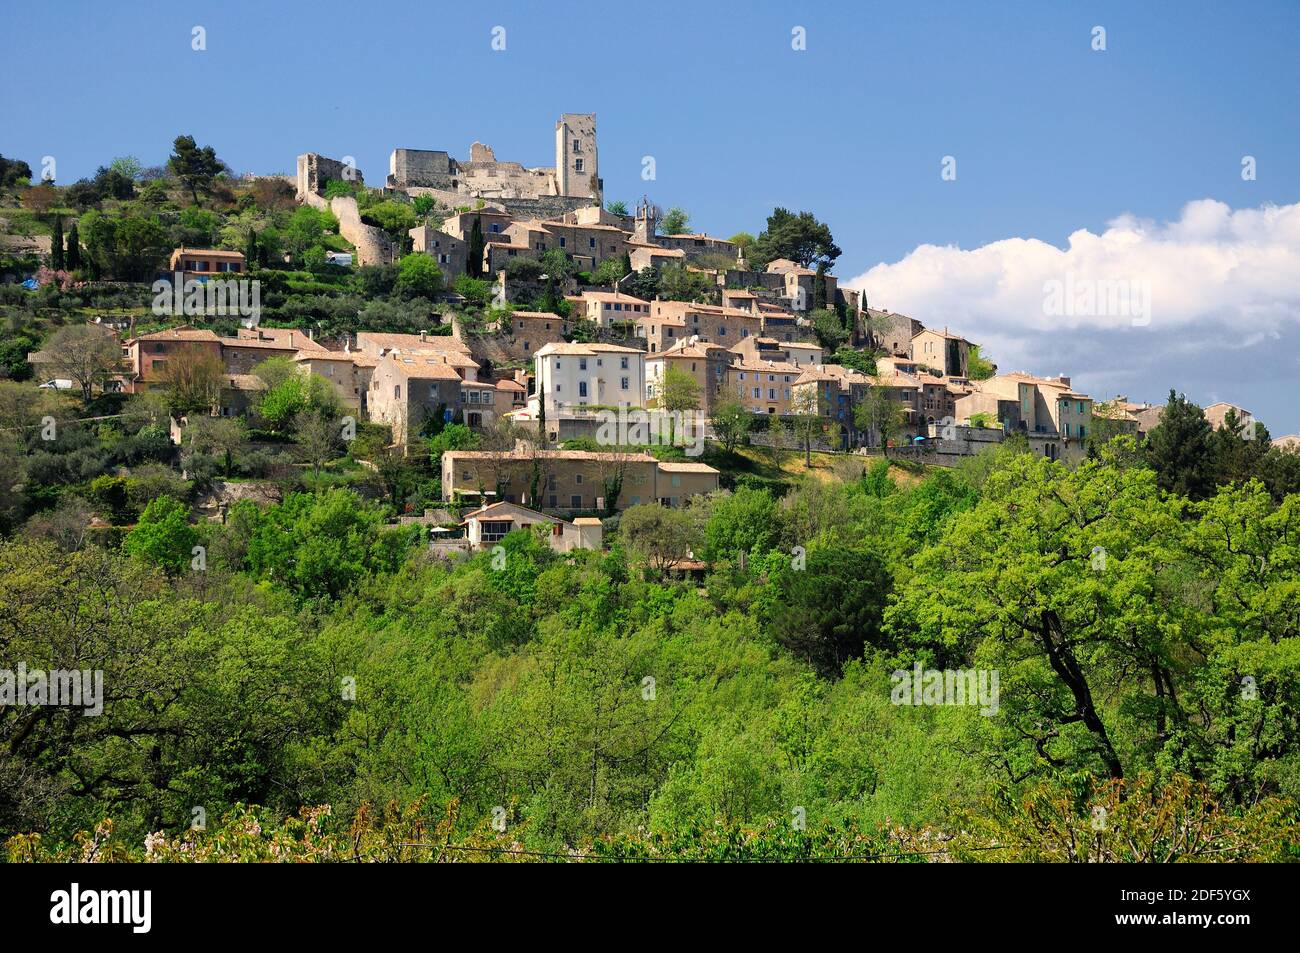 Vista sul villaggio di Lacoste, famosa attrazione storica e turistica in Francia. Foto Stock